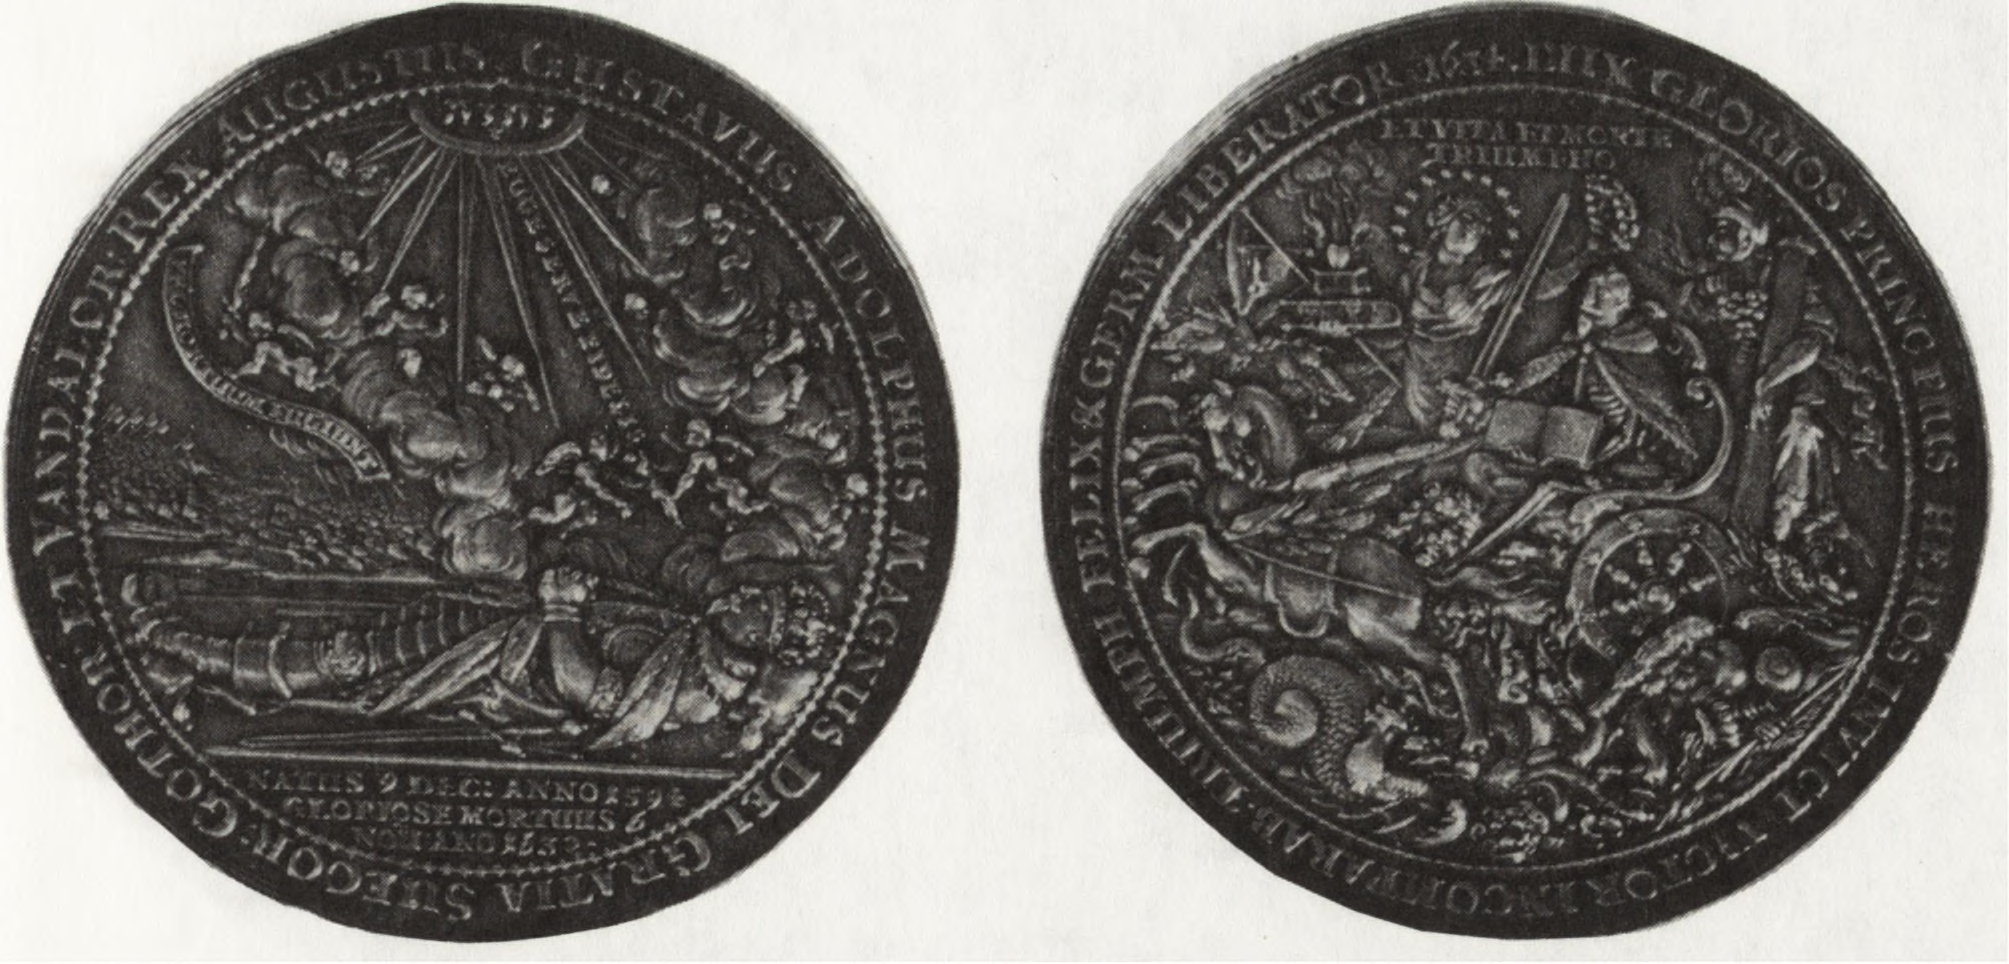 Nowe nabytki w latach 1987 1988 319 Ryc. 39. Medal wybity w 1634 r. w Gdańsku przez Sebastiana Dadlera z okazji drugiej rocznicy śmierci króla Szwecji Gustawa II Adolfa, nr inw.